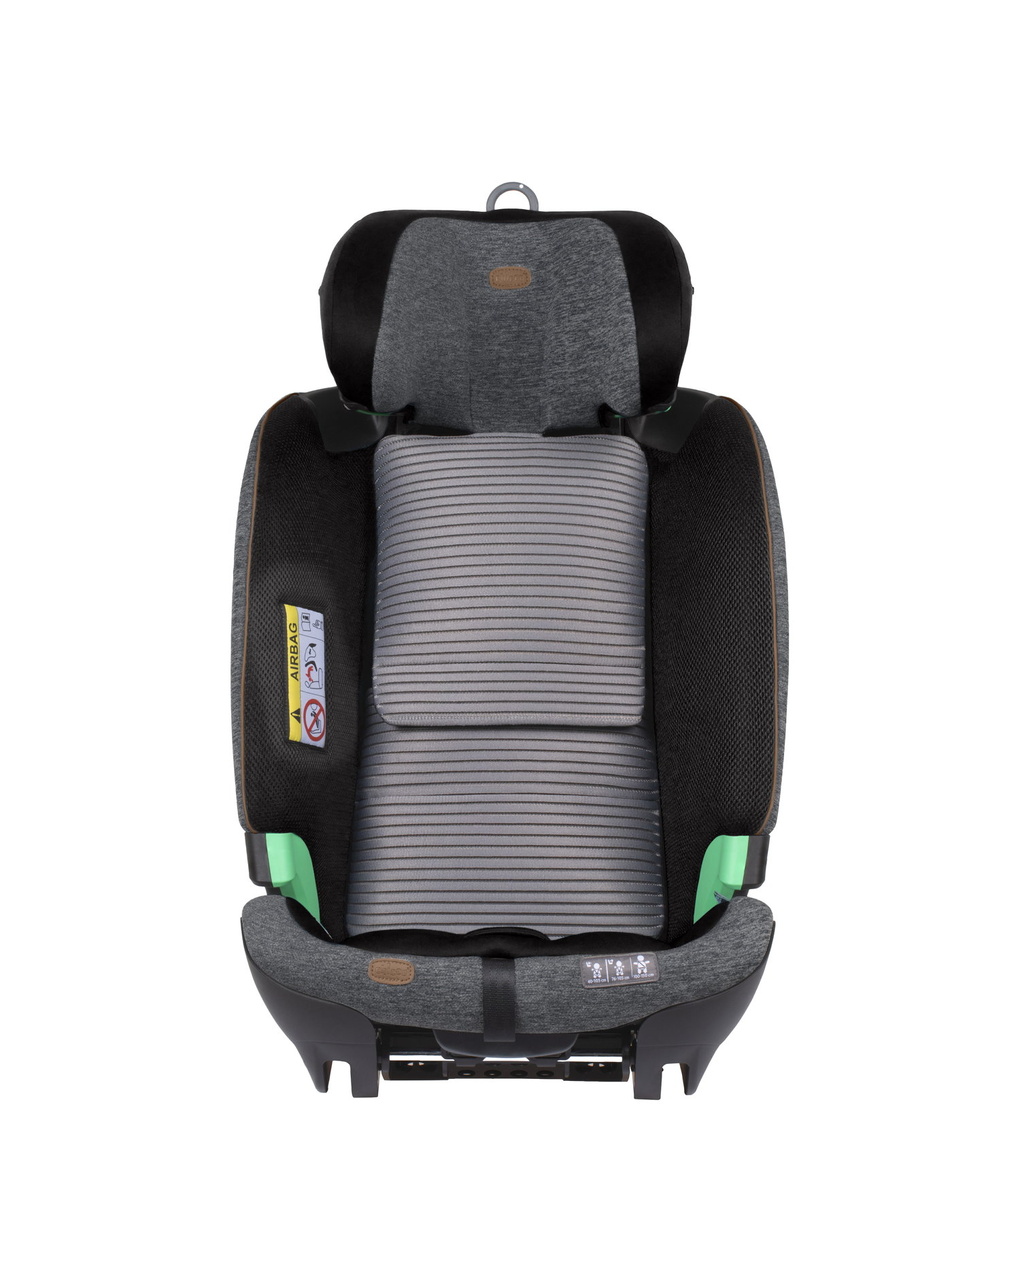 Seggiolino bi-seat senza base full 360 (61-150 cm)  black melange - chicco - Chicco